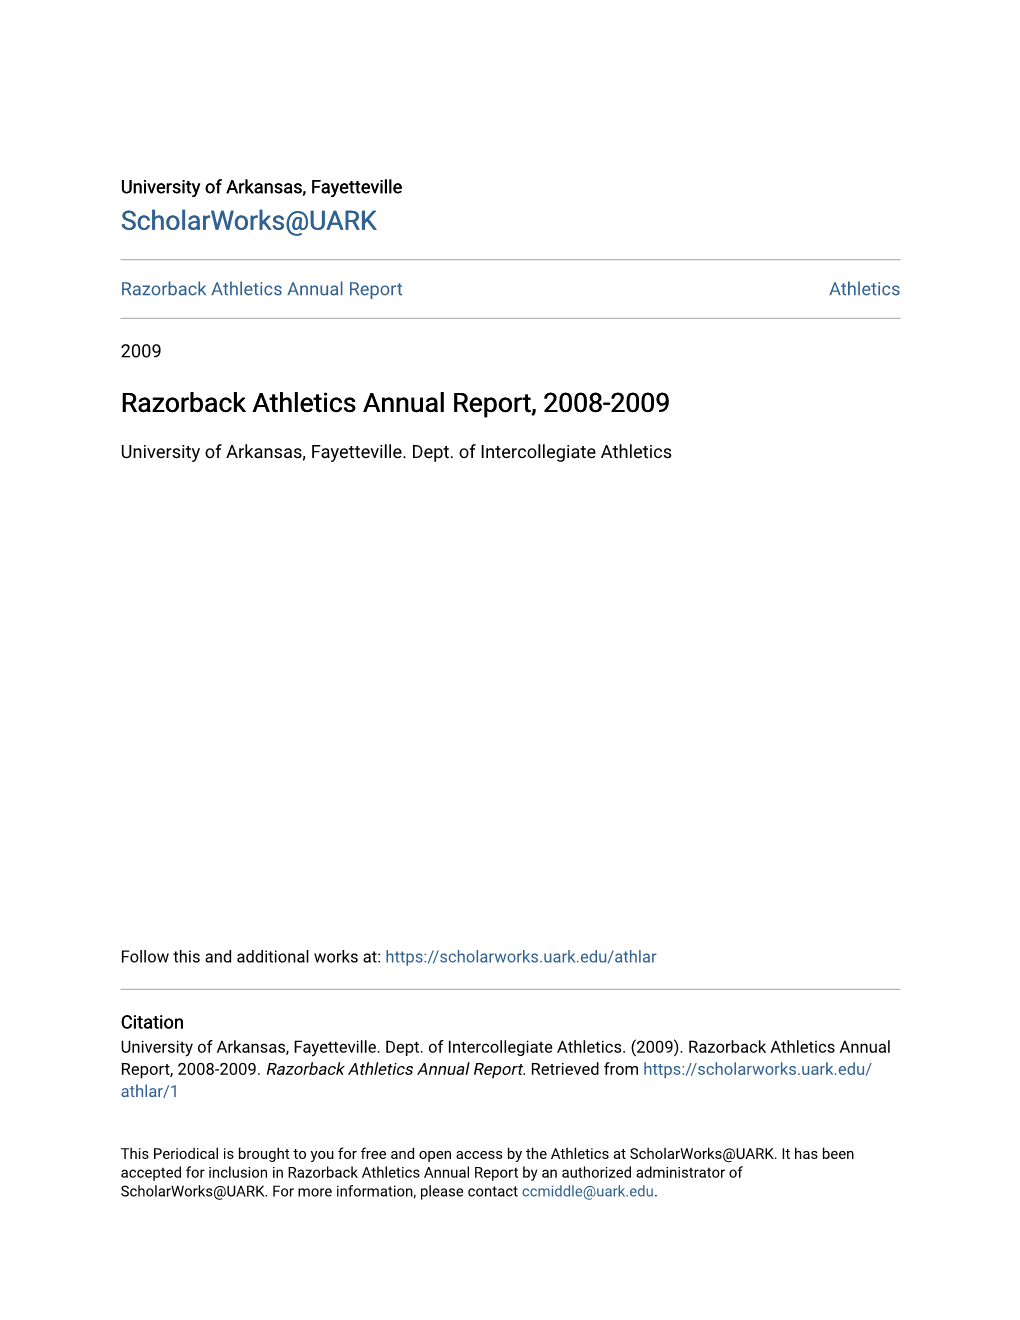 Razorback Athletics Annual Report, 2008-2009